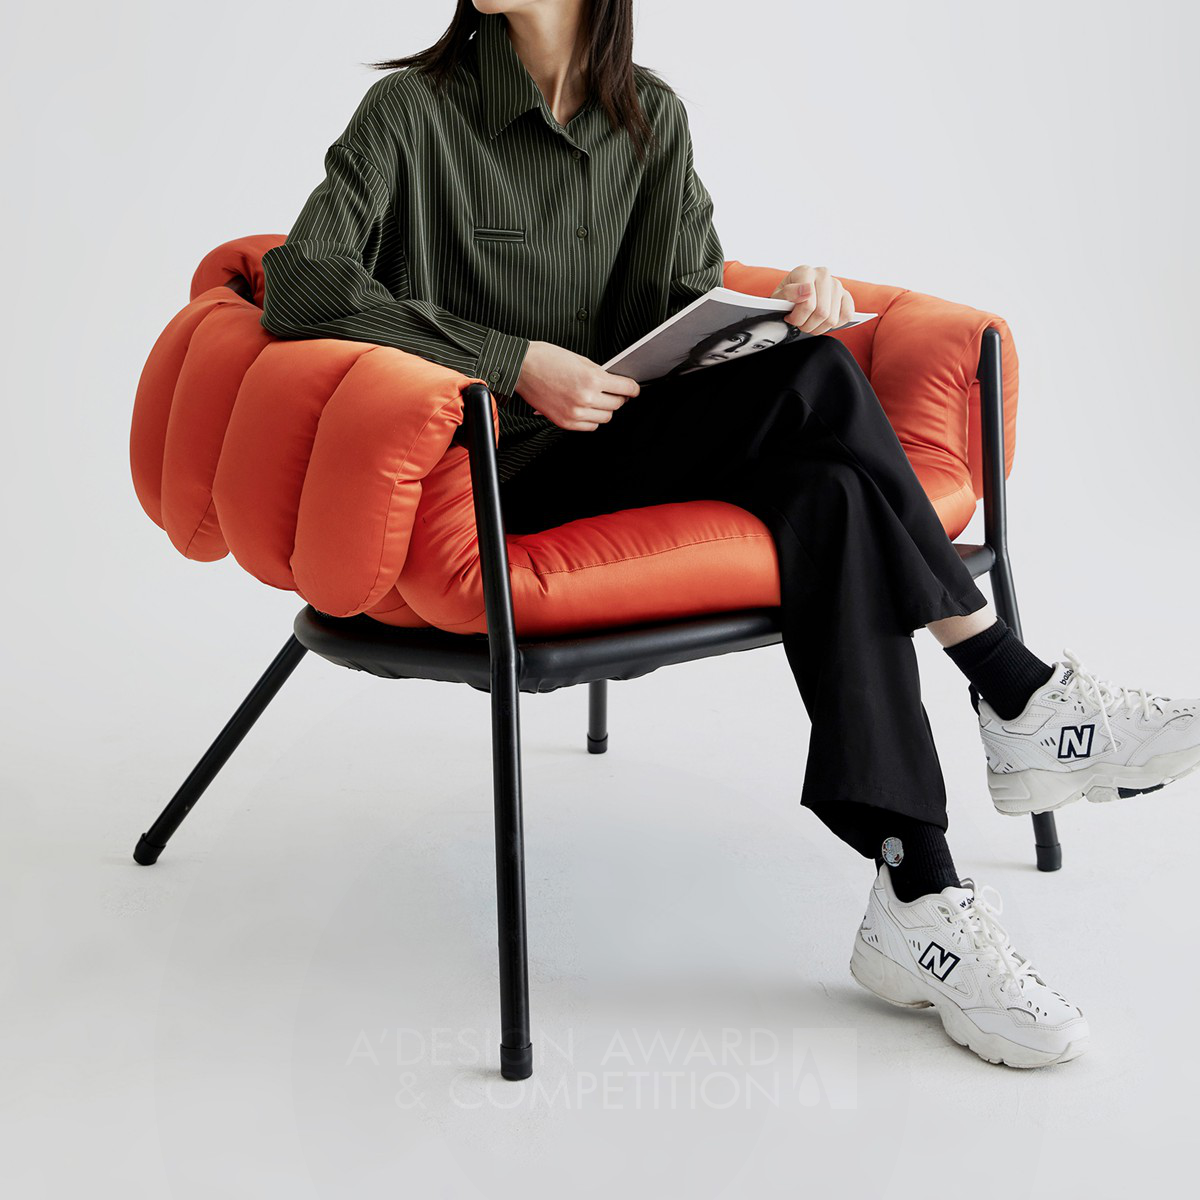 Wearing Chair by Yansheng Xia